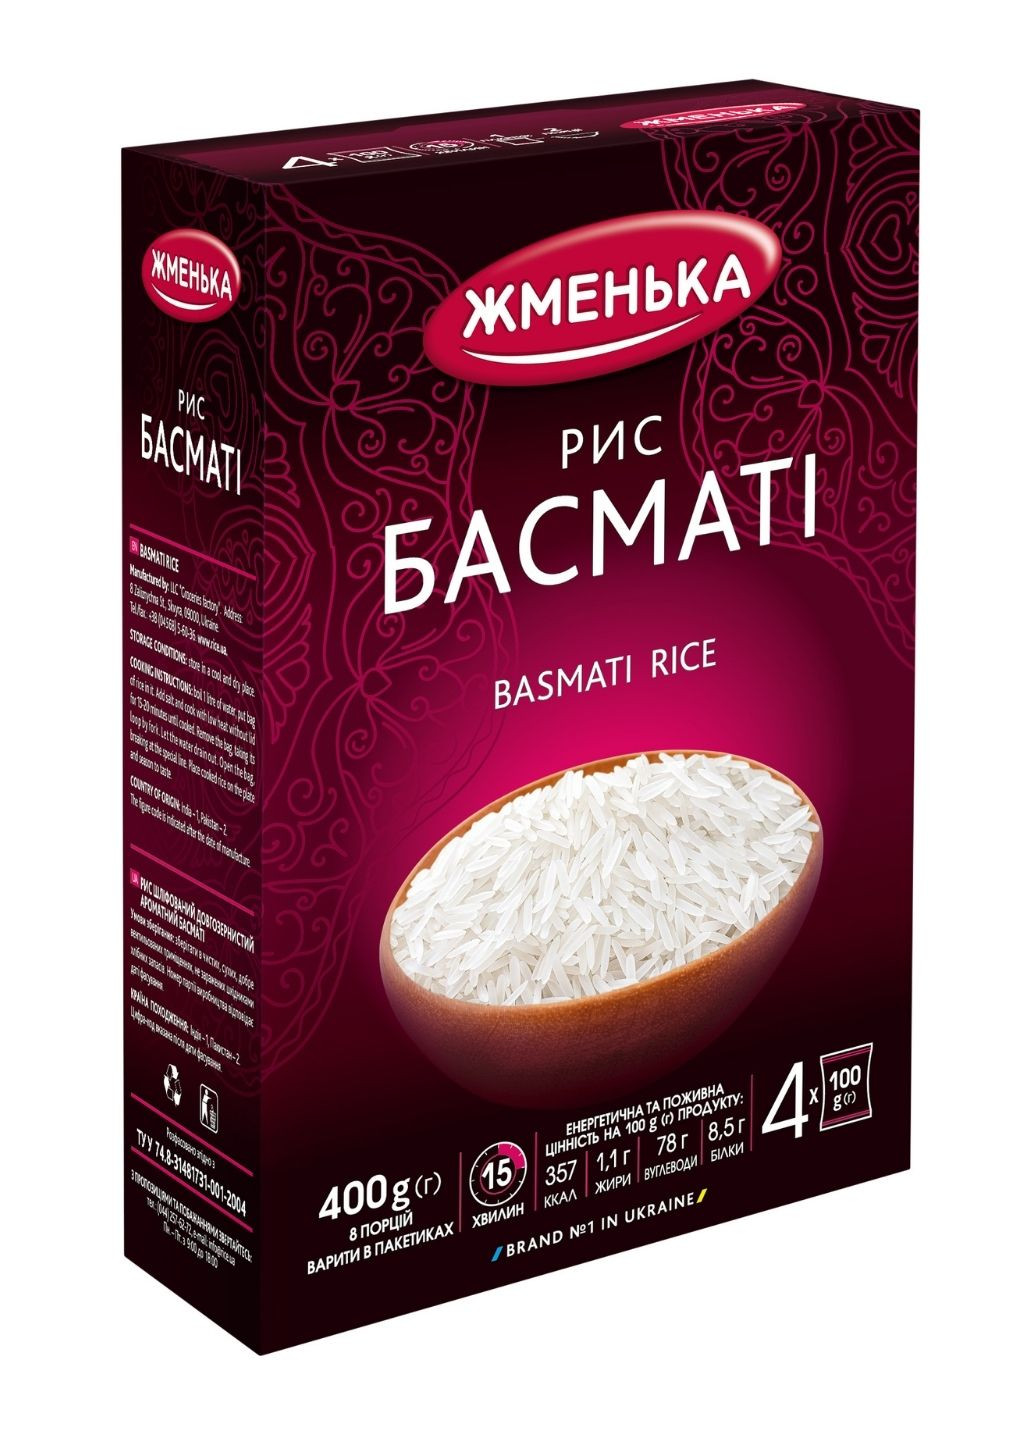 Рис Басмати в пакетиках для варки 4 шт х 100 г Жменька (244010492)